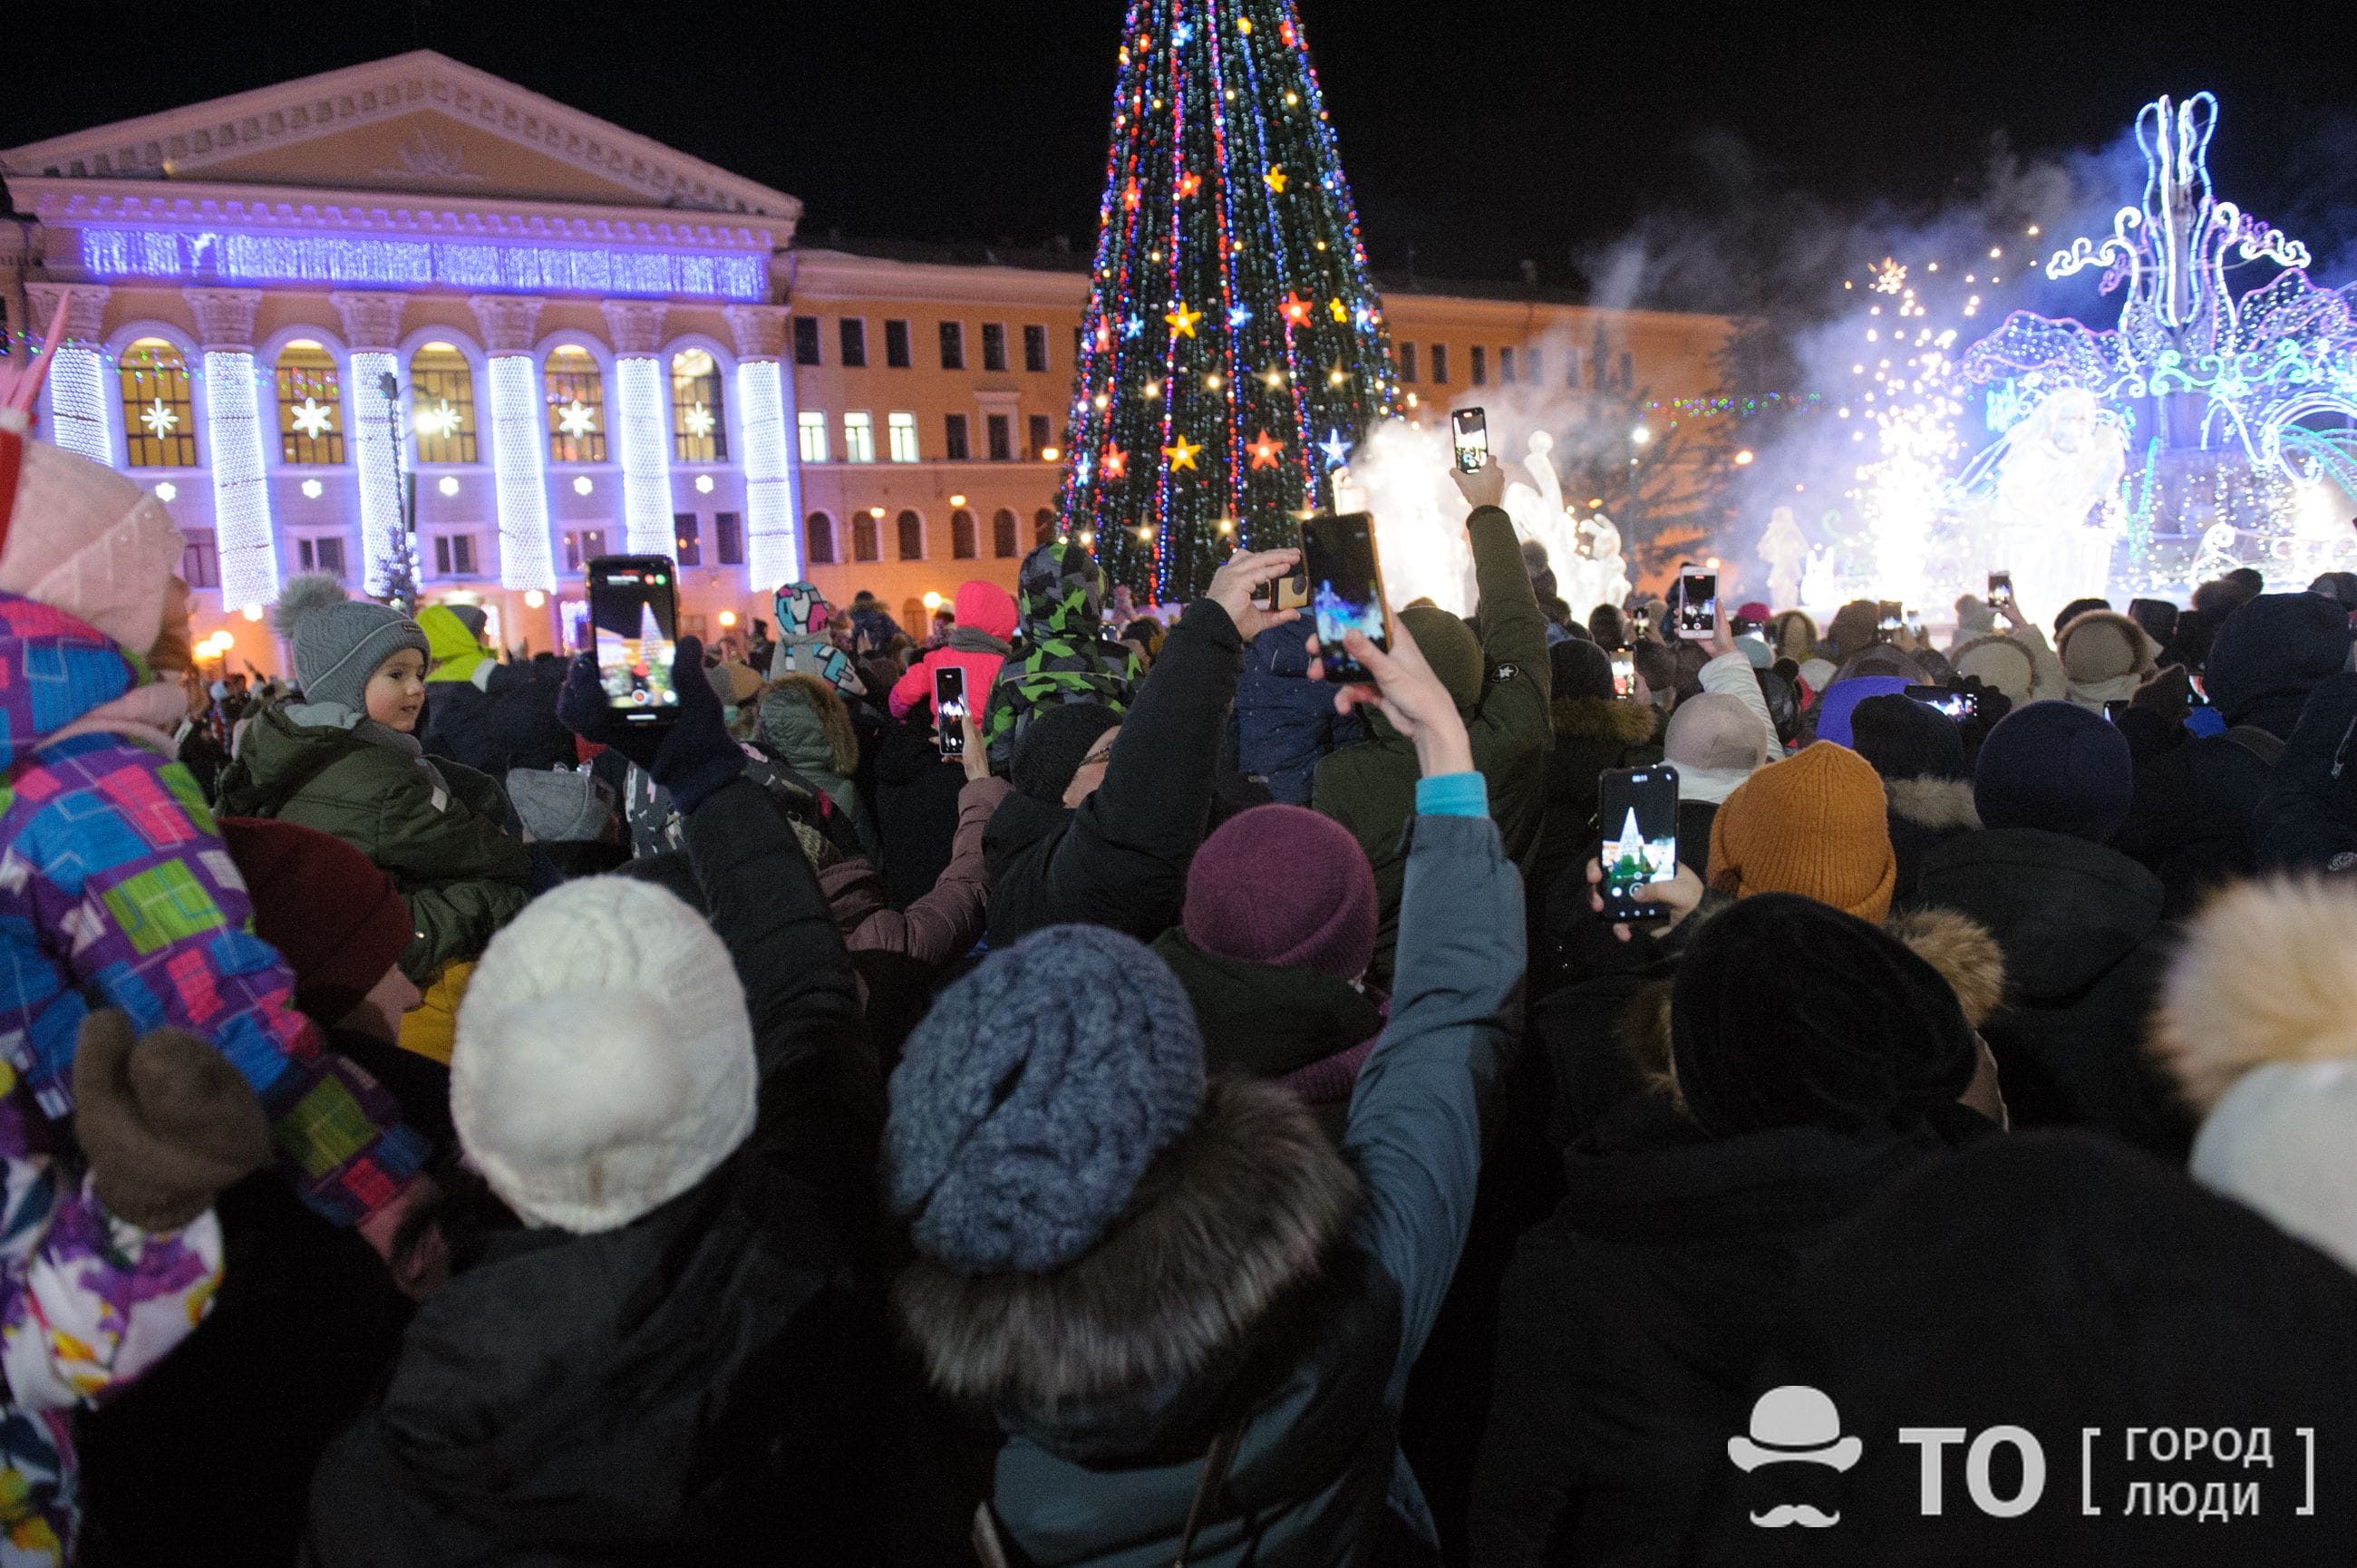 Новый год ❄, Томские новости, елка новый год праздники гирлянды В Томске включили главную городскую ёлку и новогоднюю иллюминацию